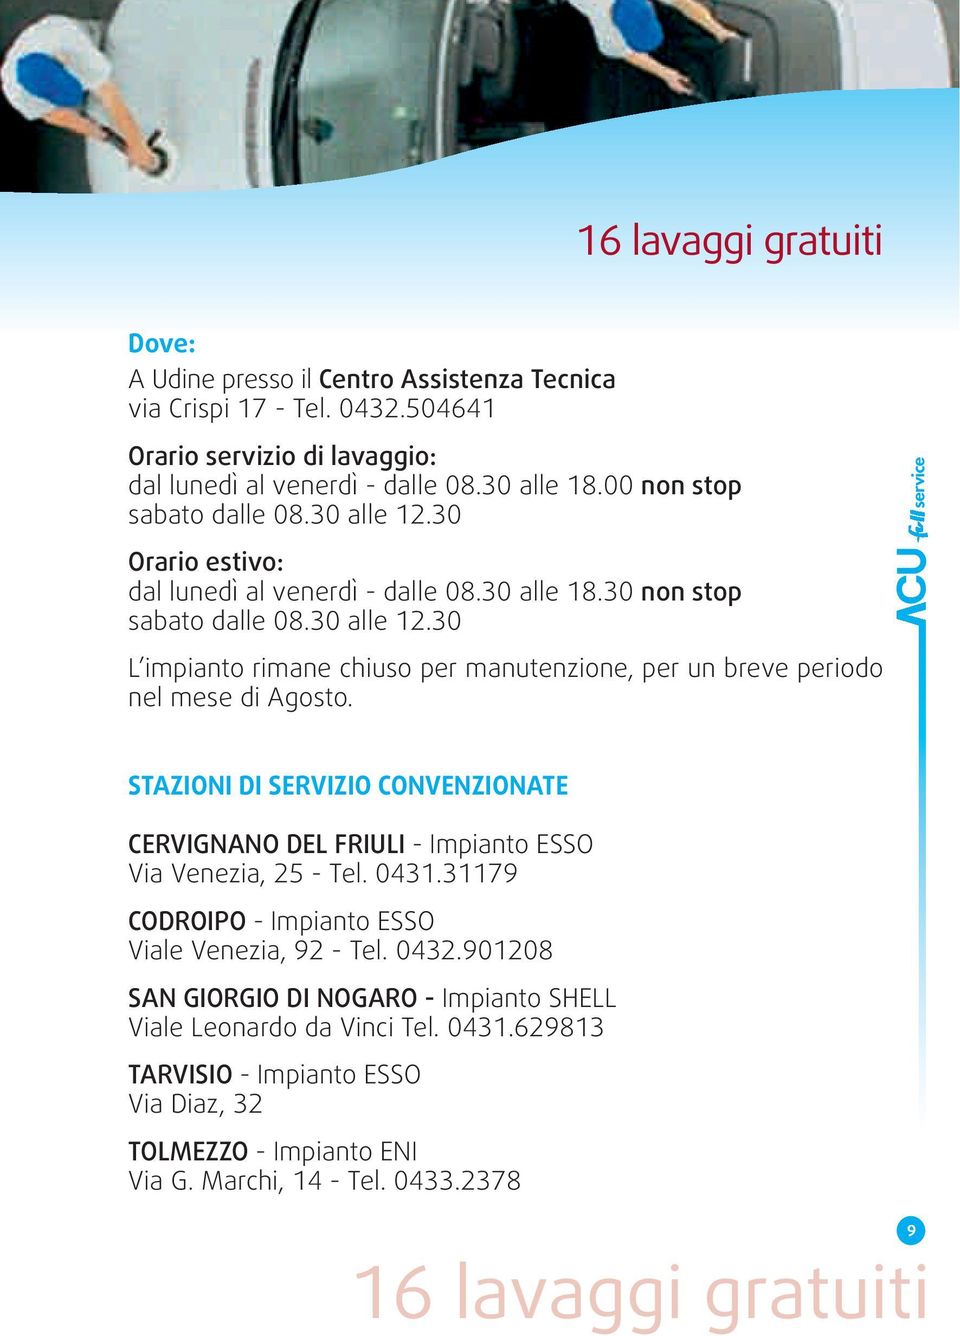 STAZIONI DI SERVIZIO CONVENZIONATE CERVIGNANO DEL FRIULI - Impianto ESSO Via Venezia, 25 - Tel. 0431.31179 CODROIPO - Impianto ESSO Viale Venezia, 92 - Tel. 0432.